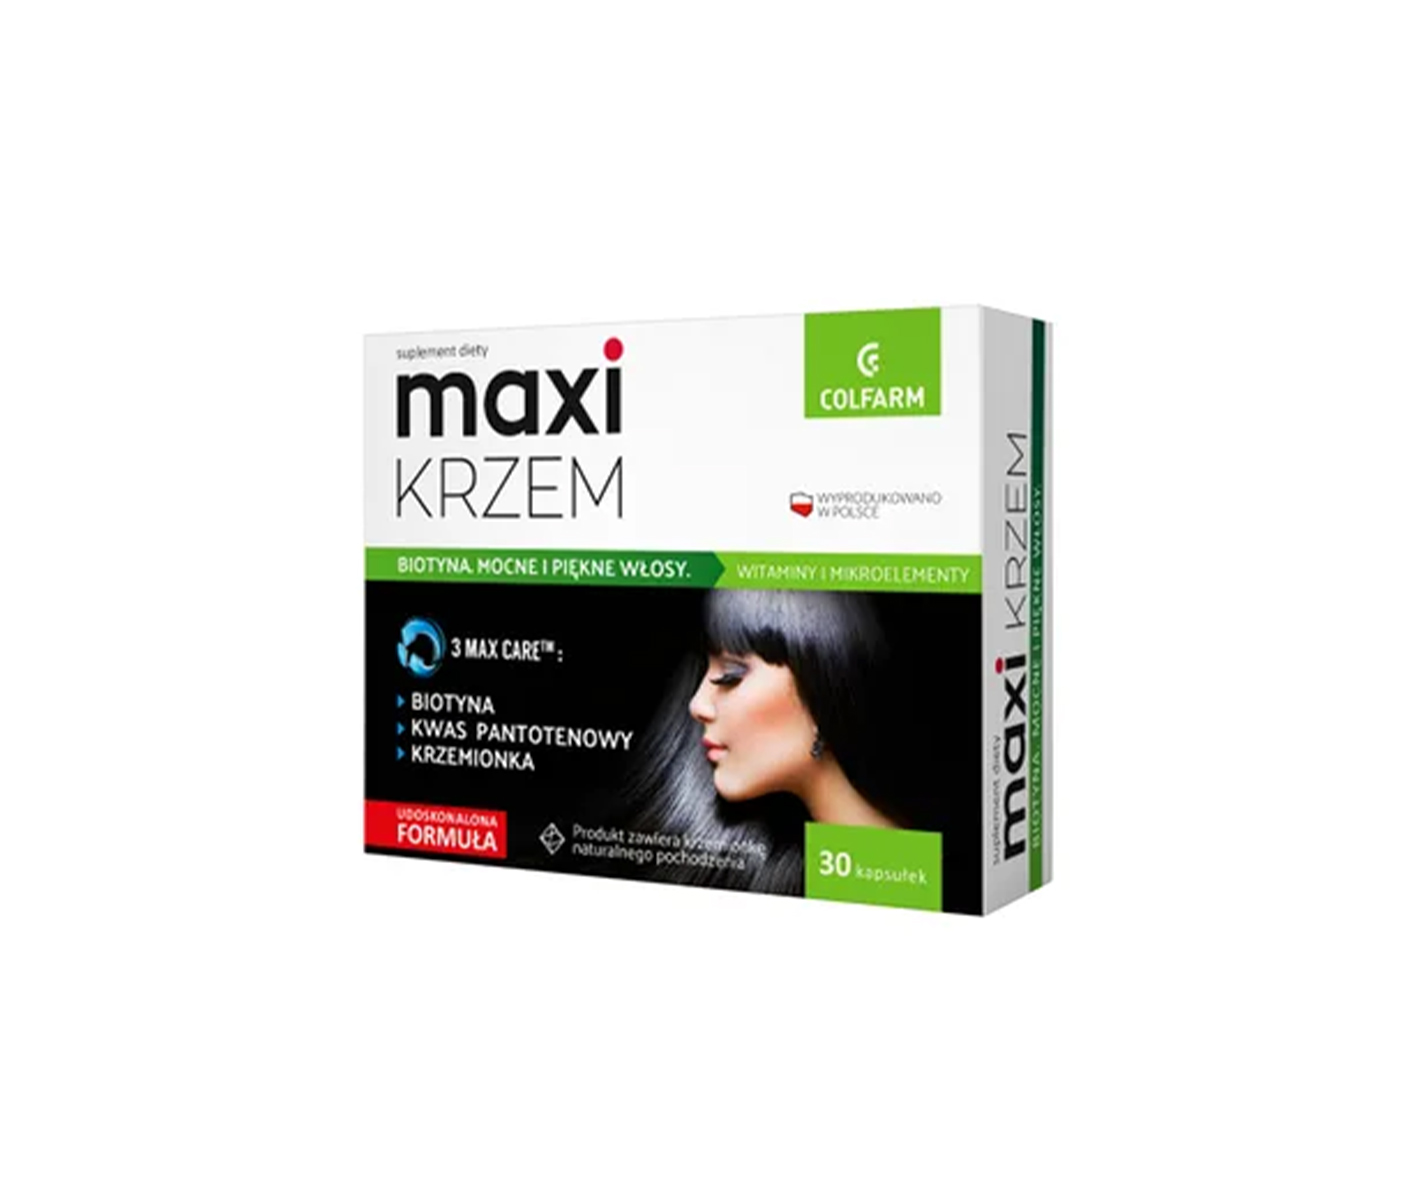 Colfarm, Maxi Silicon, Hair Dietary Supplement